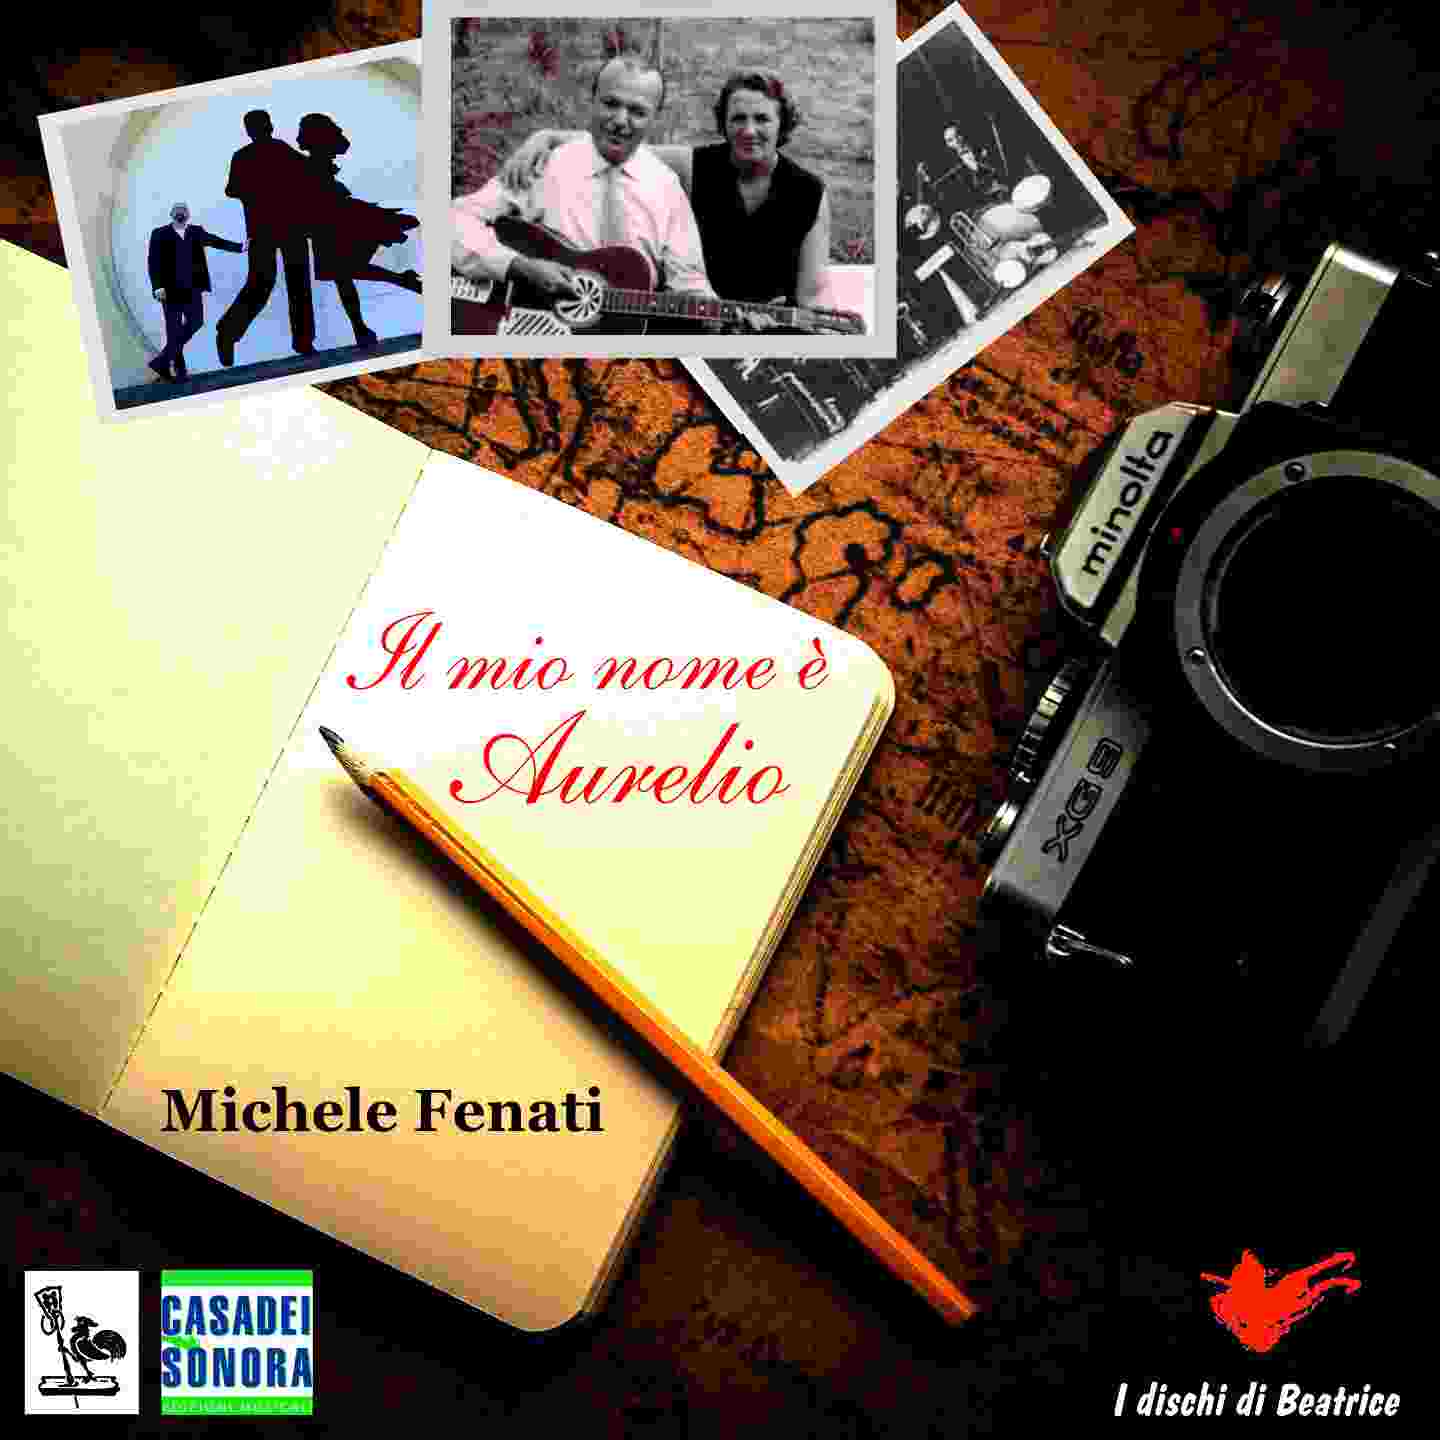 MICHELE FENATI, “Il mio nome è Aurelio” è il nuovo singolo dedicato al maestro Secondo Casadei nel 50° anniversario della sua scomparsa